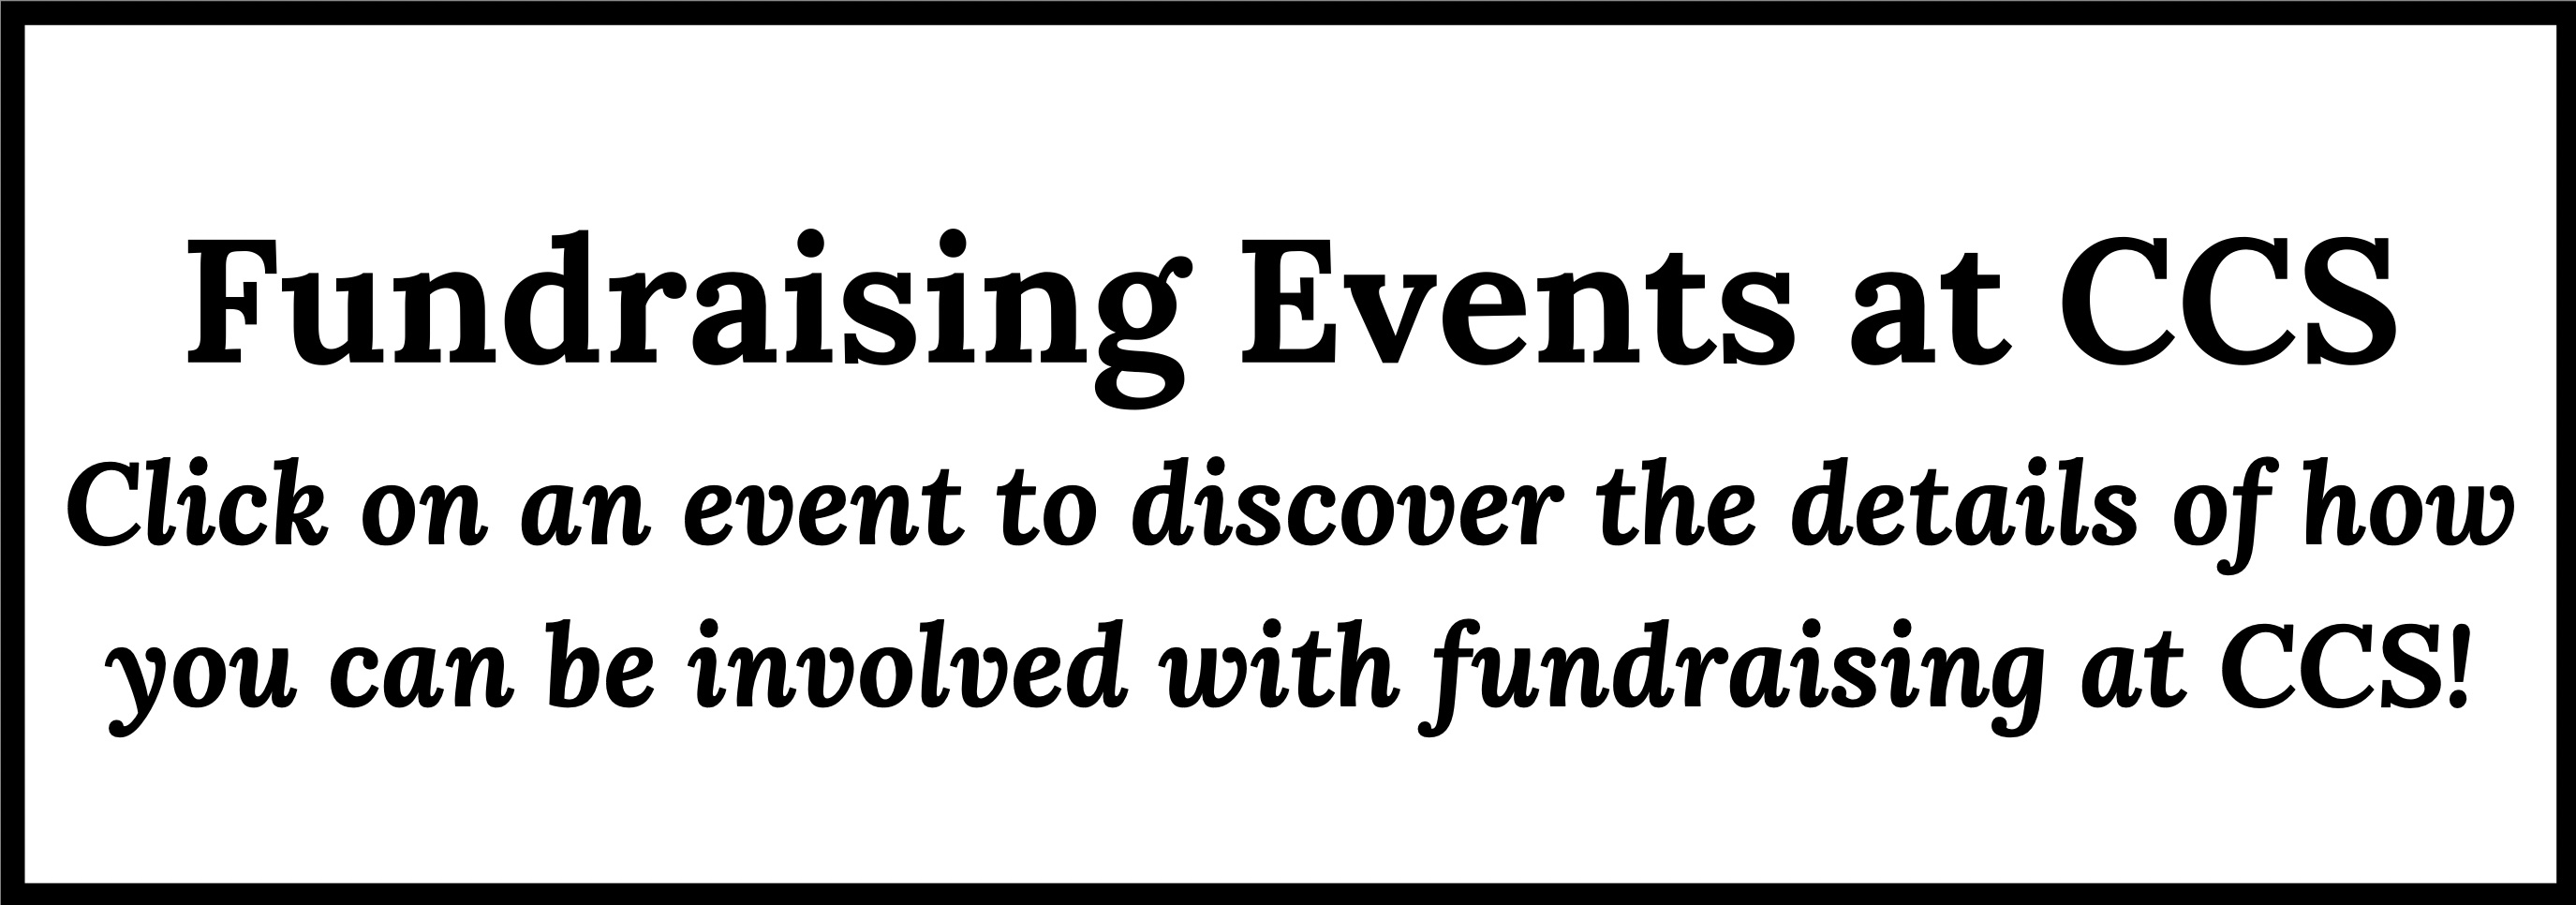 Fundraising Events at CCS